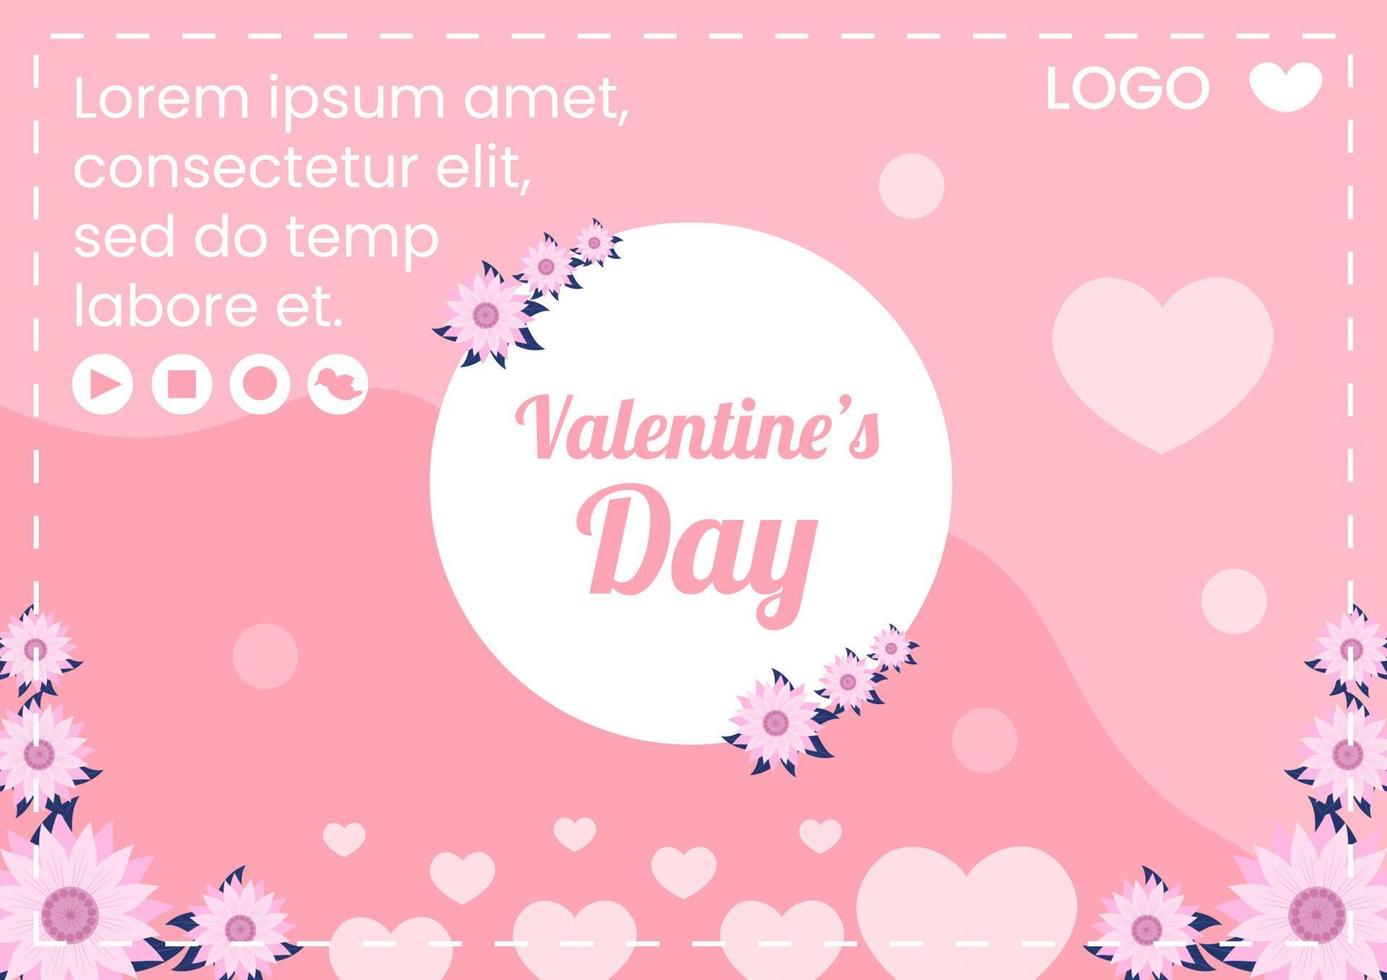 feliz día de san valentín plantilla de folleto diseño plano ilustración editable de fondo cuadrado para redes sociales, tarjeta de felicitación de amor o pancarta vector